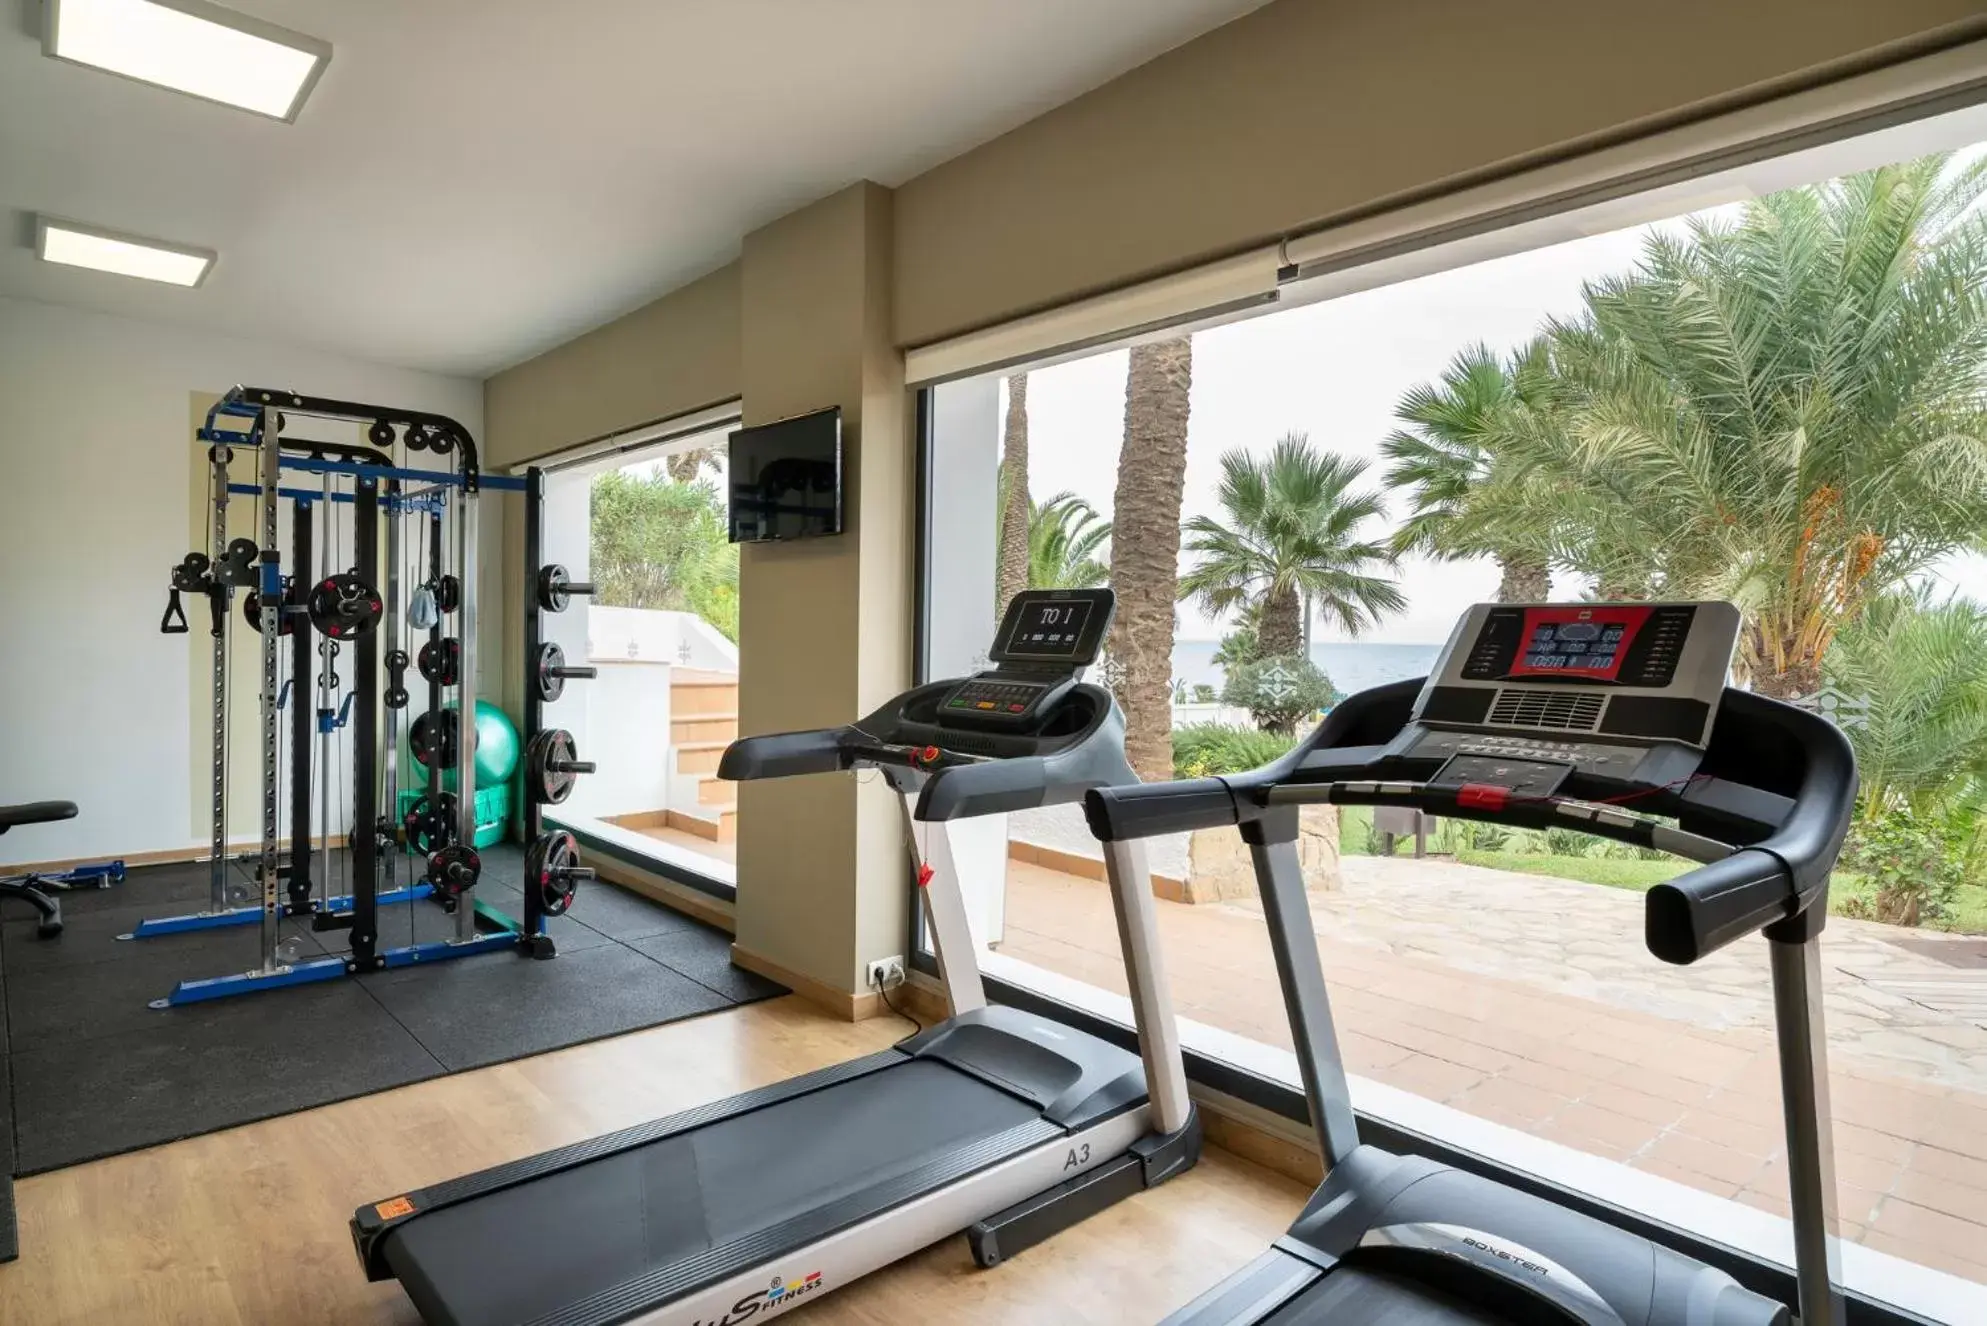 Fitness centre/facilities, Fitness Center/Facilities in Parador de Mojácar